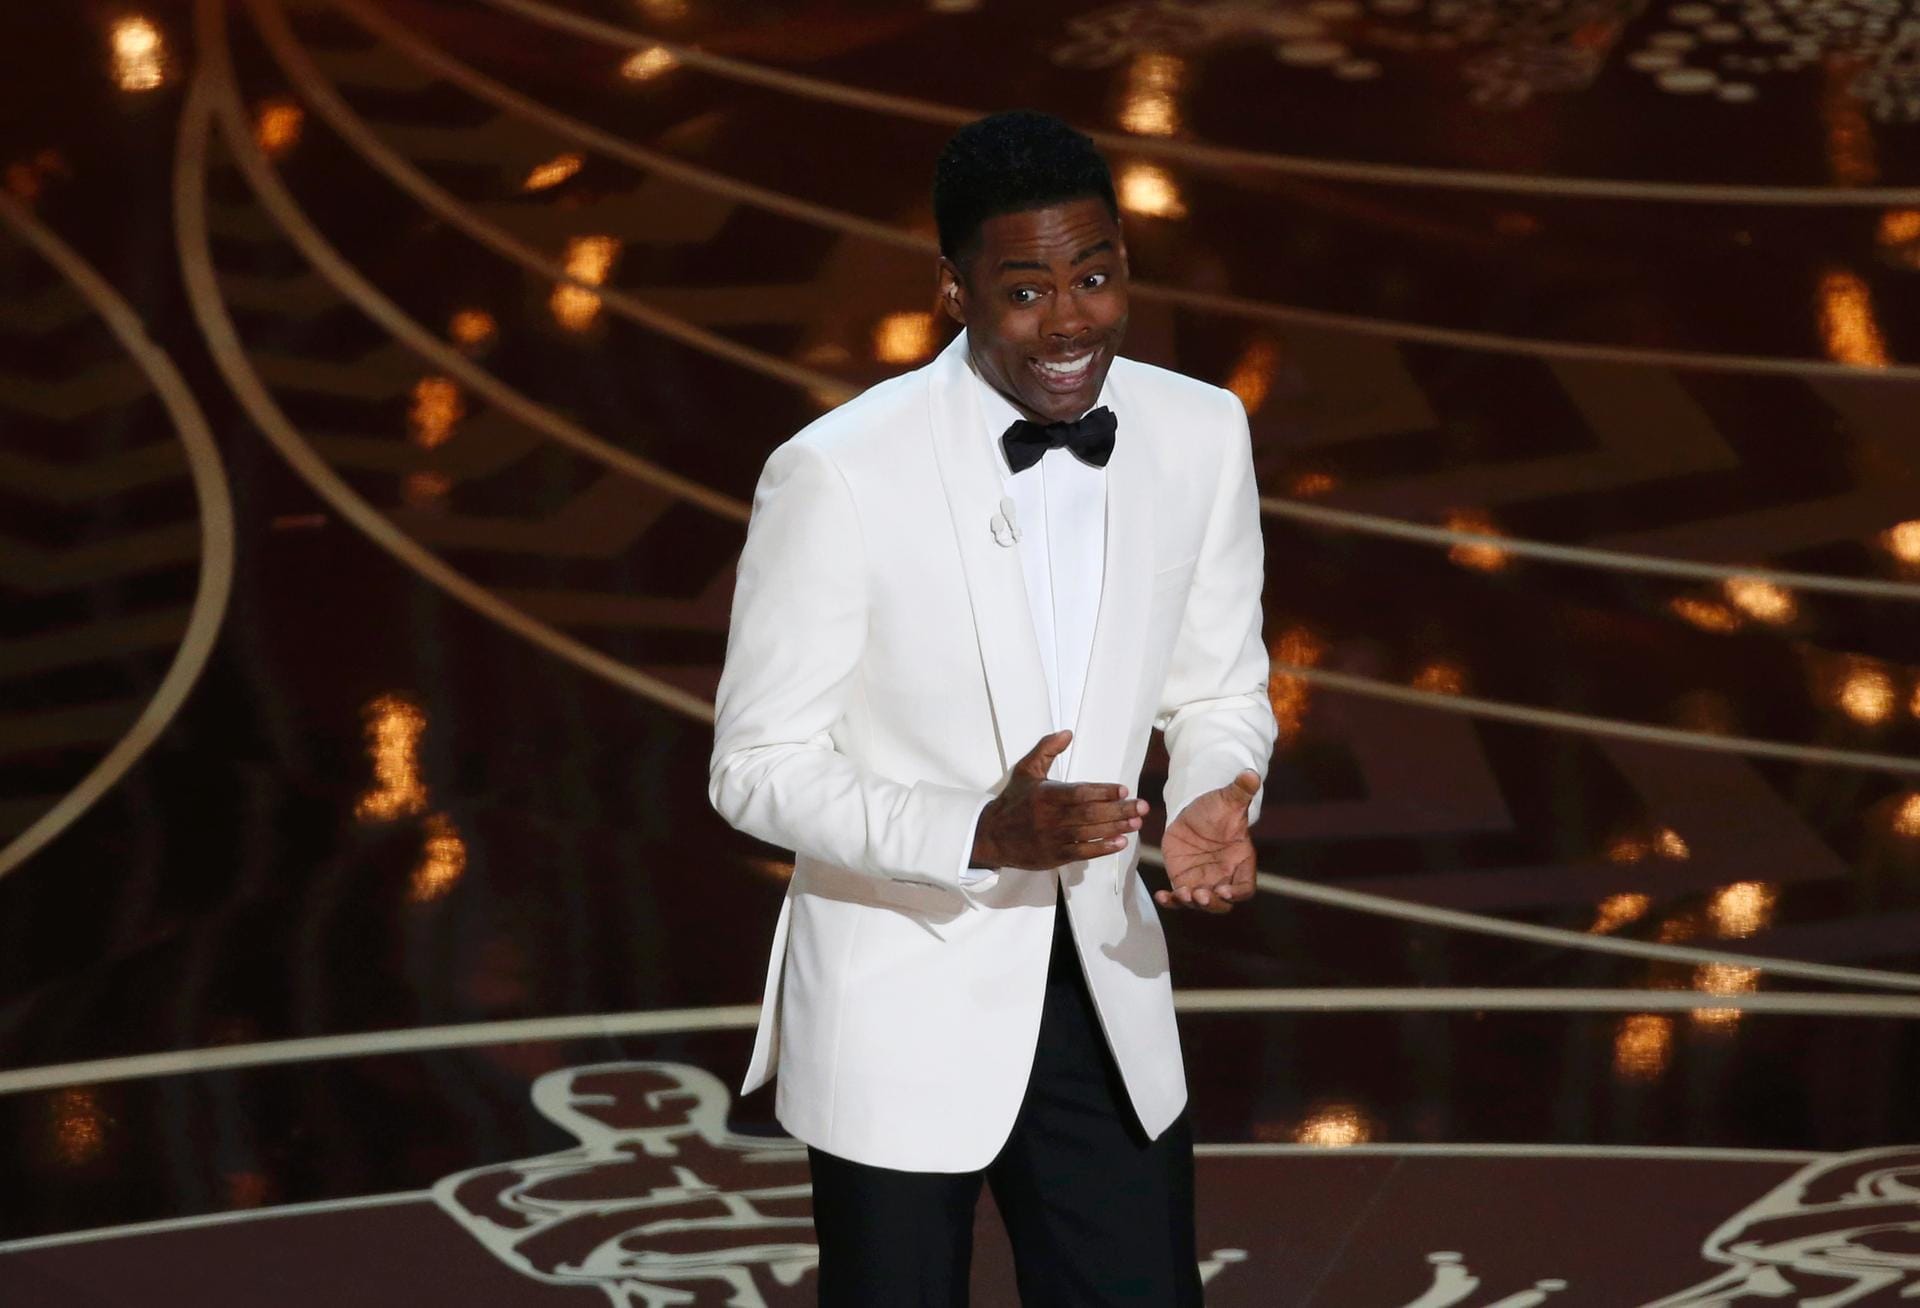 US-Schauspieler und Comedian Chris Rock übernahm zum zweiten Mal die Moderation der Oscar-Verleihung. Schon zu Beginn der Sendung ließ er sich mit scharfer Zunge zu den Vorwürfen gegen die Oscar-Academy aus. Mehrere afro-amerikanische Schauspieler boykottierten die Show, weil sie sie als "zu weiß" empfinden.